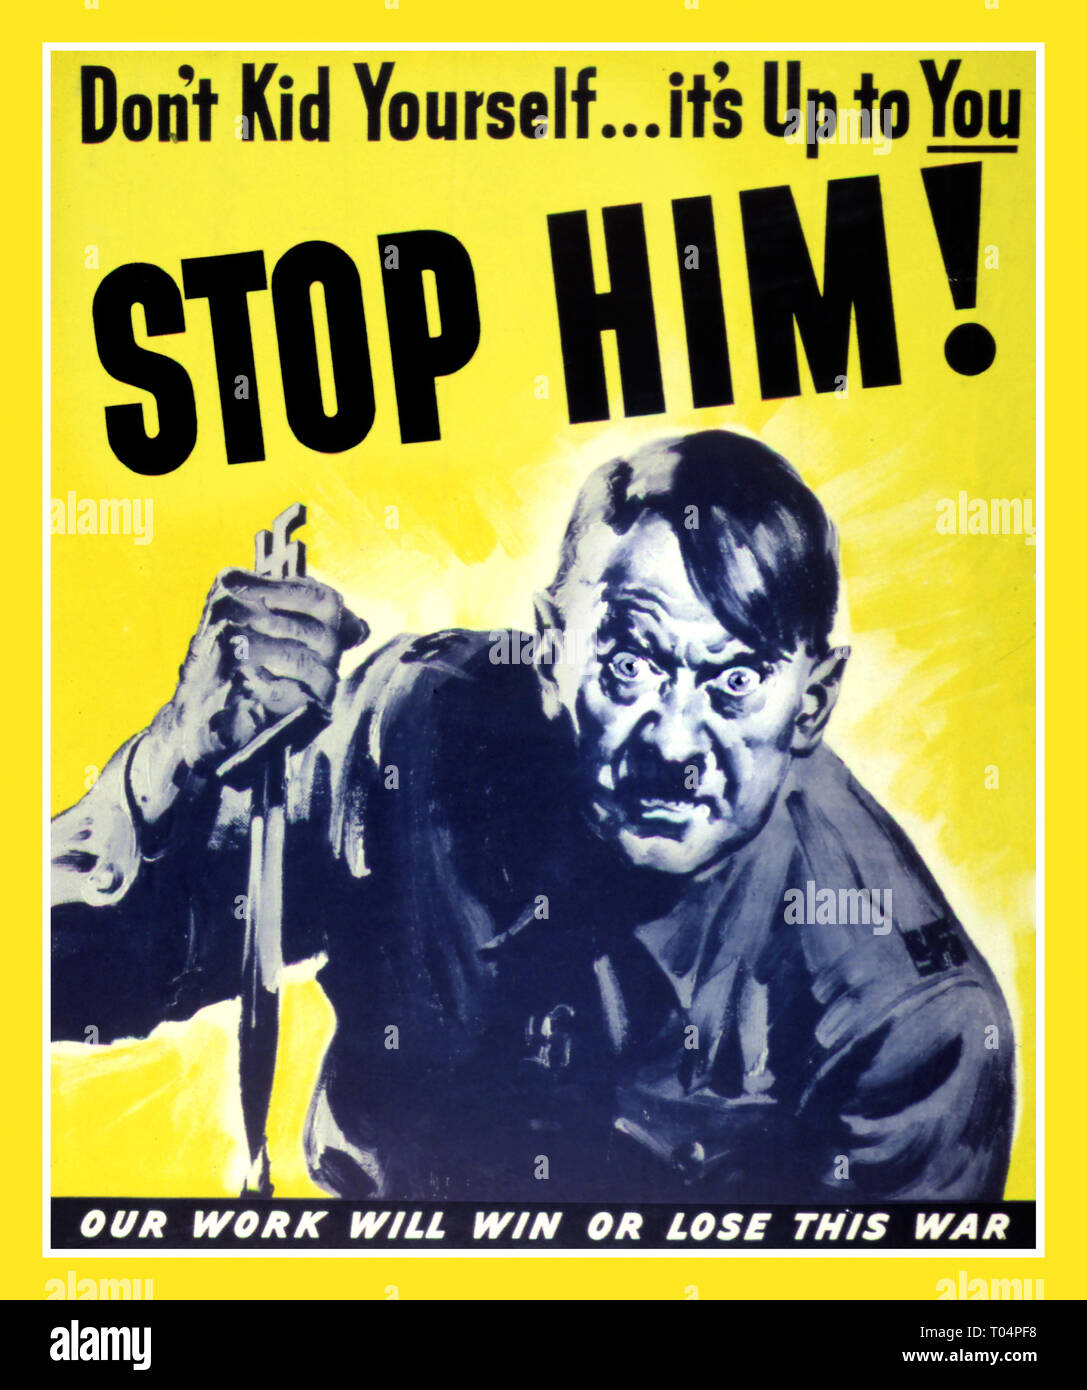 WW2 ADOLF HITLER nella rabbia demoniaca con pugnale insanguinato la seconda guerra mondiale la propaganda Poster Anti-Nazi Germania "Non Kid te...a te... fermare lui!" "Il nostro lavoro sarà vincere o perdere questa guerra' 1943 SECONDA GUERRA MONDIALE 2 Foto Stock